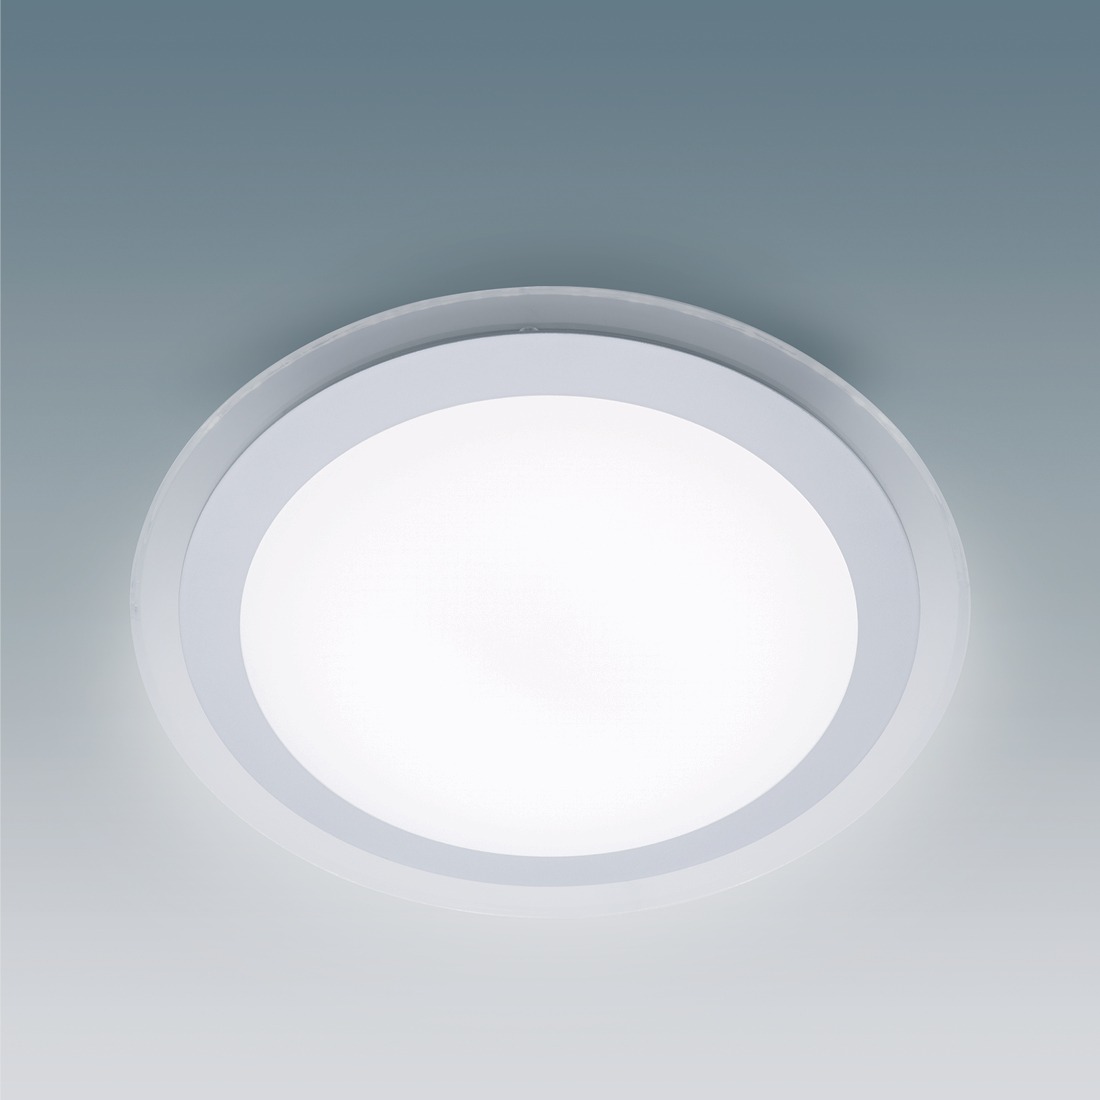 Lighting-guide-flush-ceiling-light